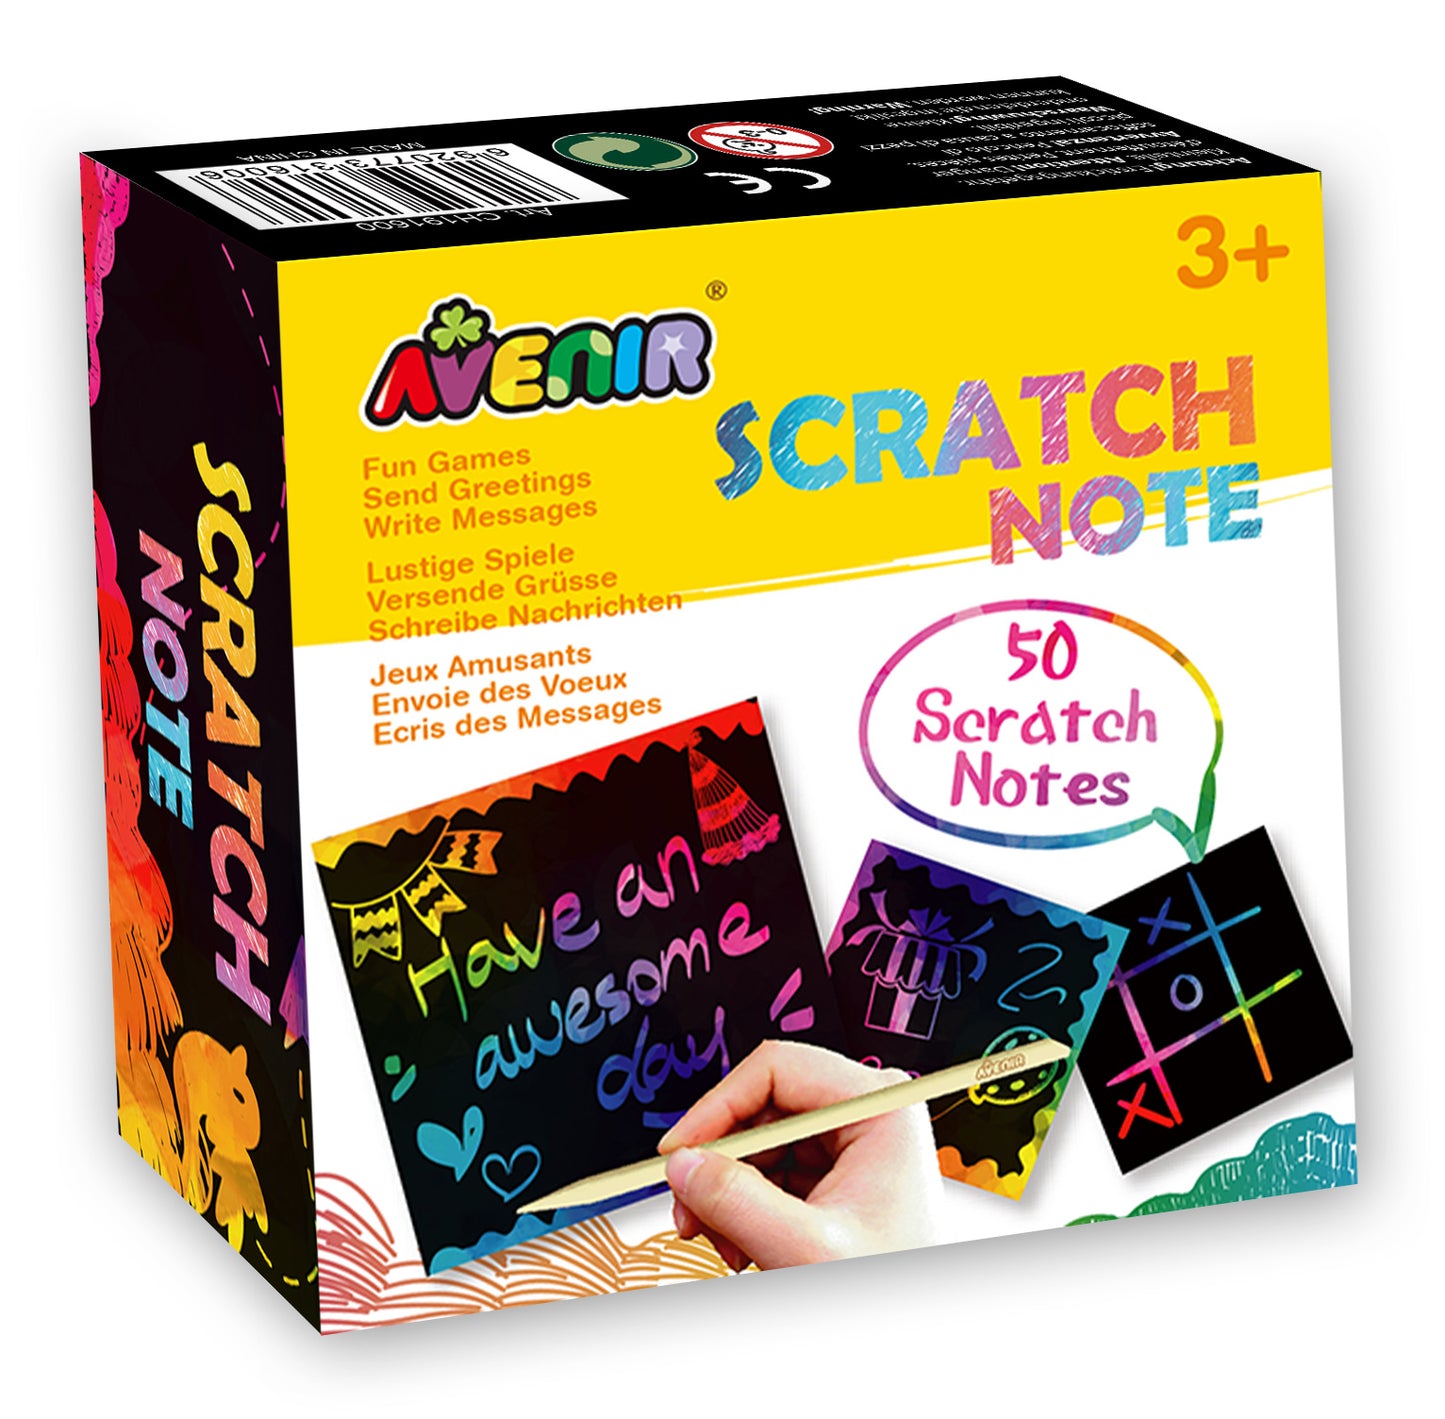 Scratch Note in Display - 12 pcs